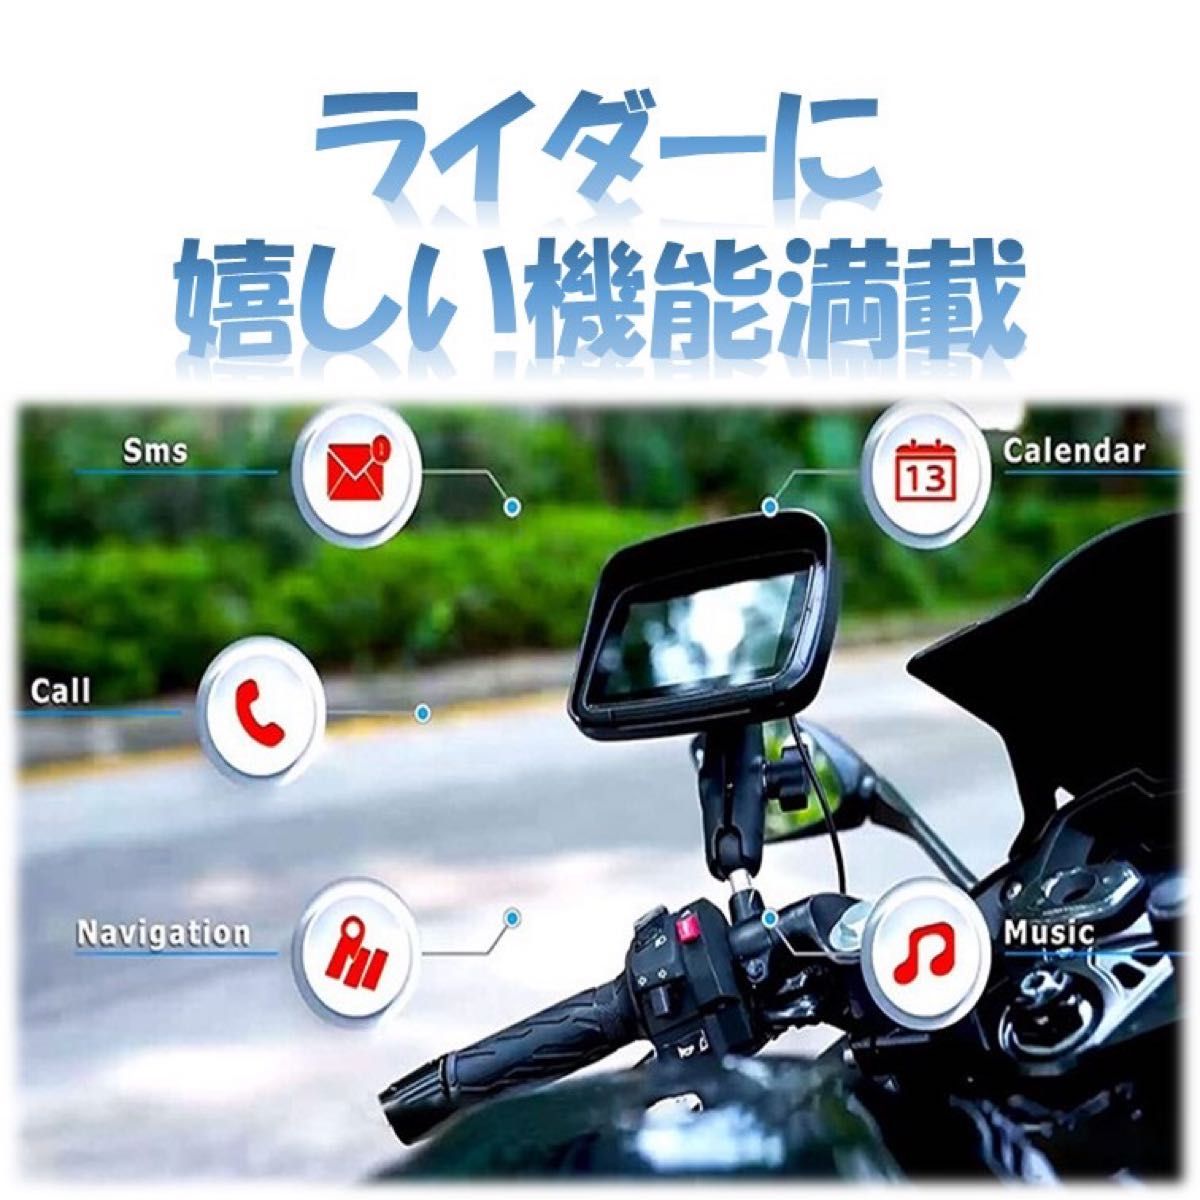 バイク ナビ 5インチ CarPlay AndroidAuto カープレイ アンドロイドオート iPhone 防水 ポータブル 